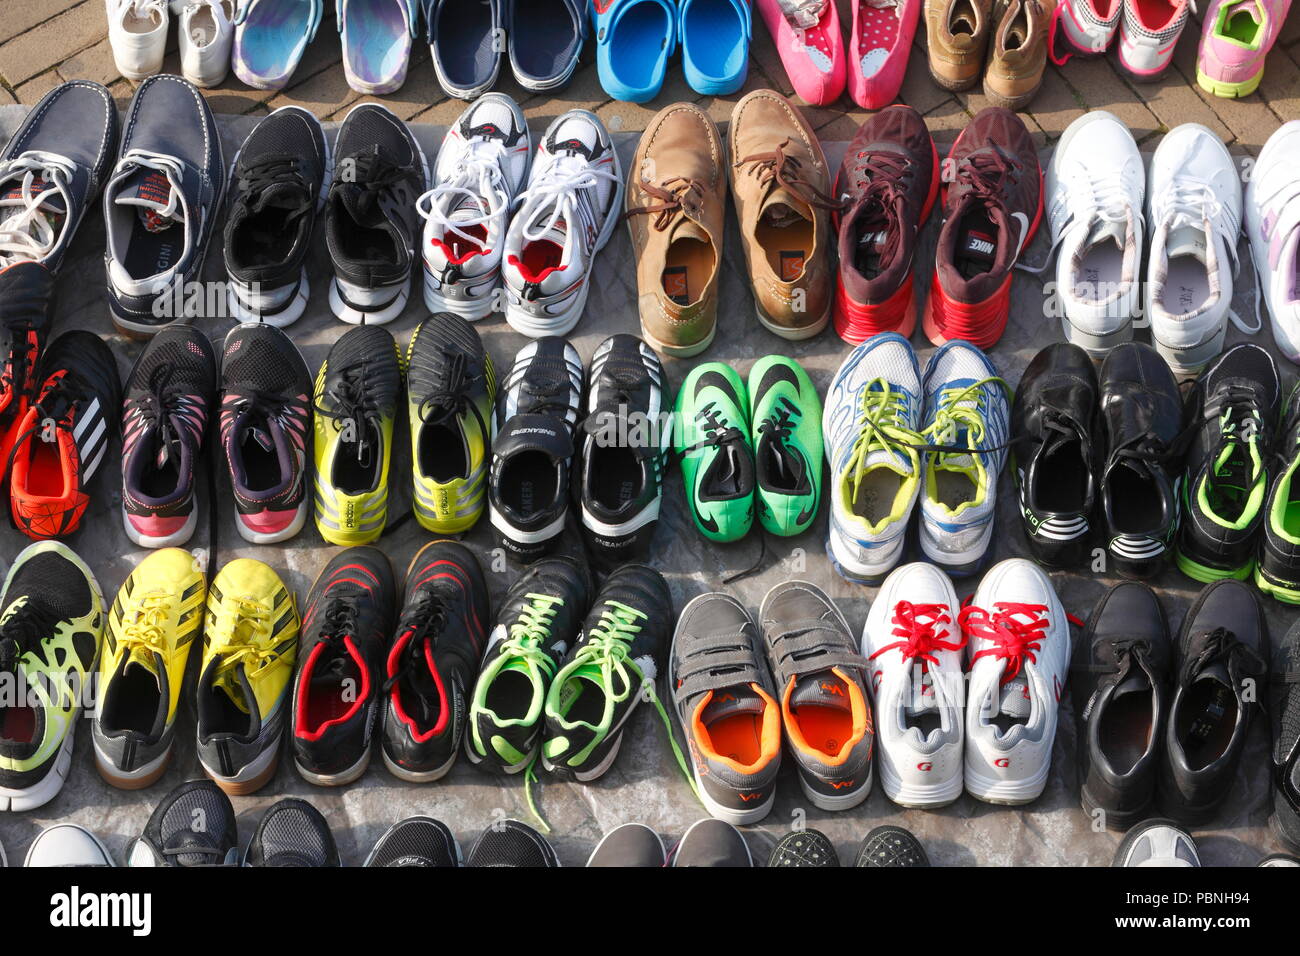 Bunte Sport Schuhe auf einem Flohmarkt Stall, Bremen, Deutschland, Europa  Ich bunte Sportschuhe mit einem Flohmarktstand, Bremer Kajenmarkt  Flohmarkt, ein Stockfotografie - Alamy